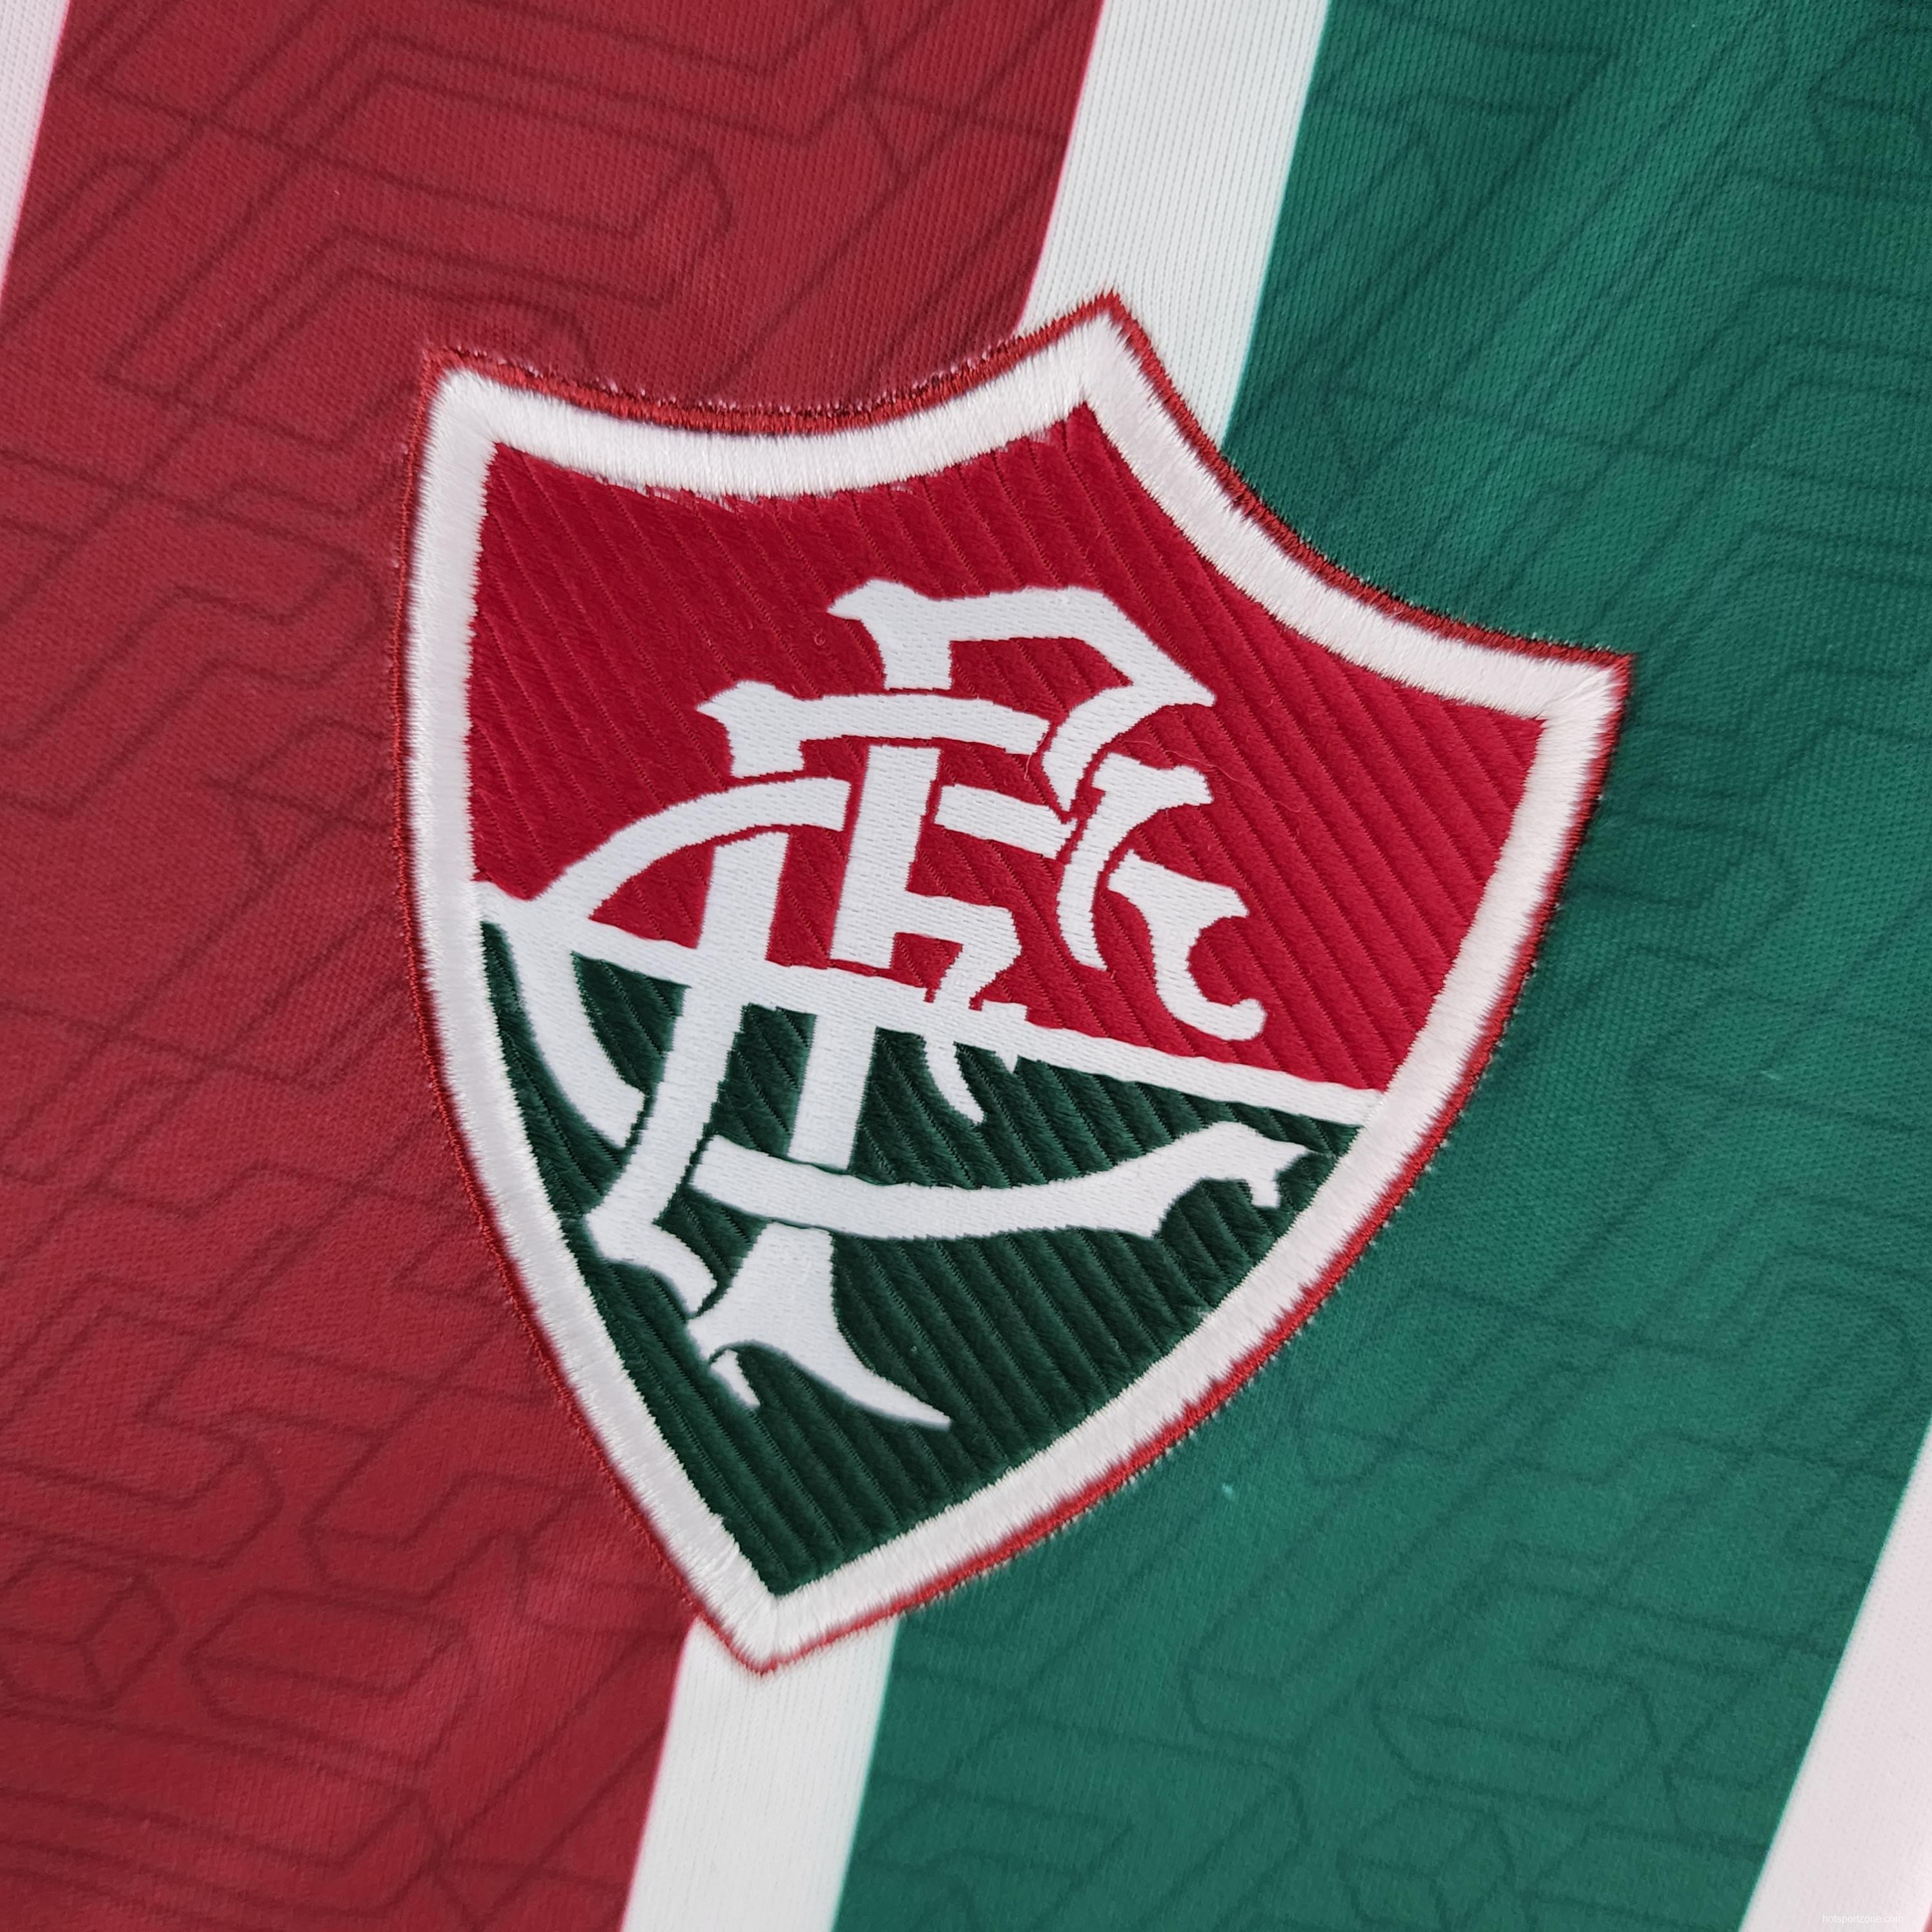 2022 Woman Fluminense Home Soccer Jersey